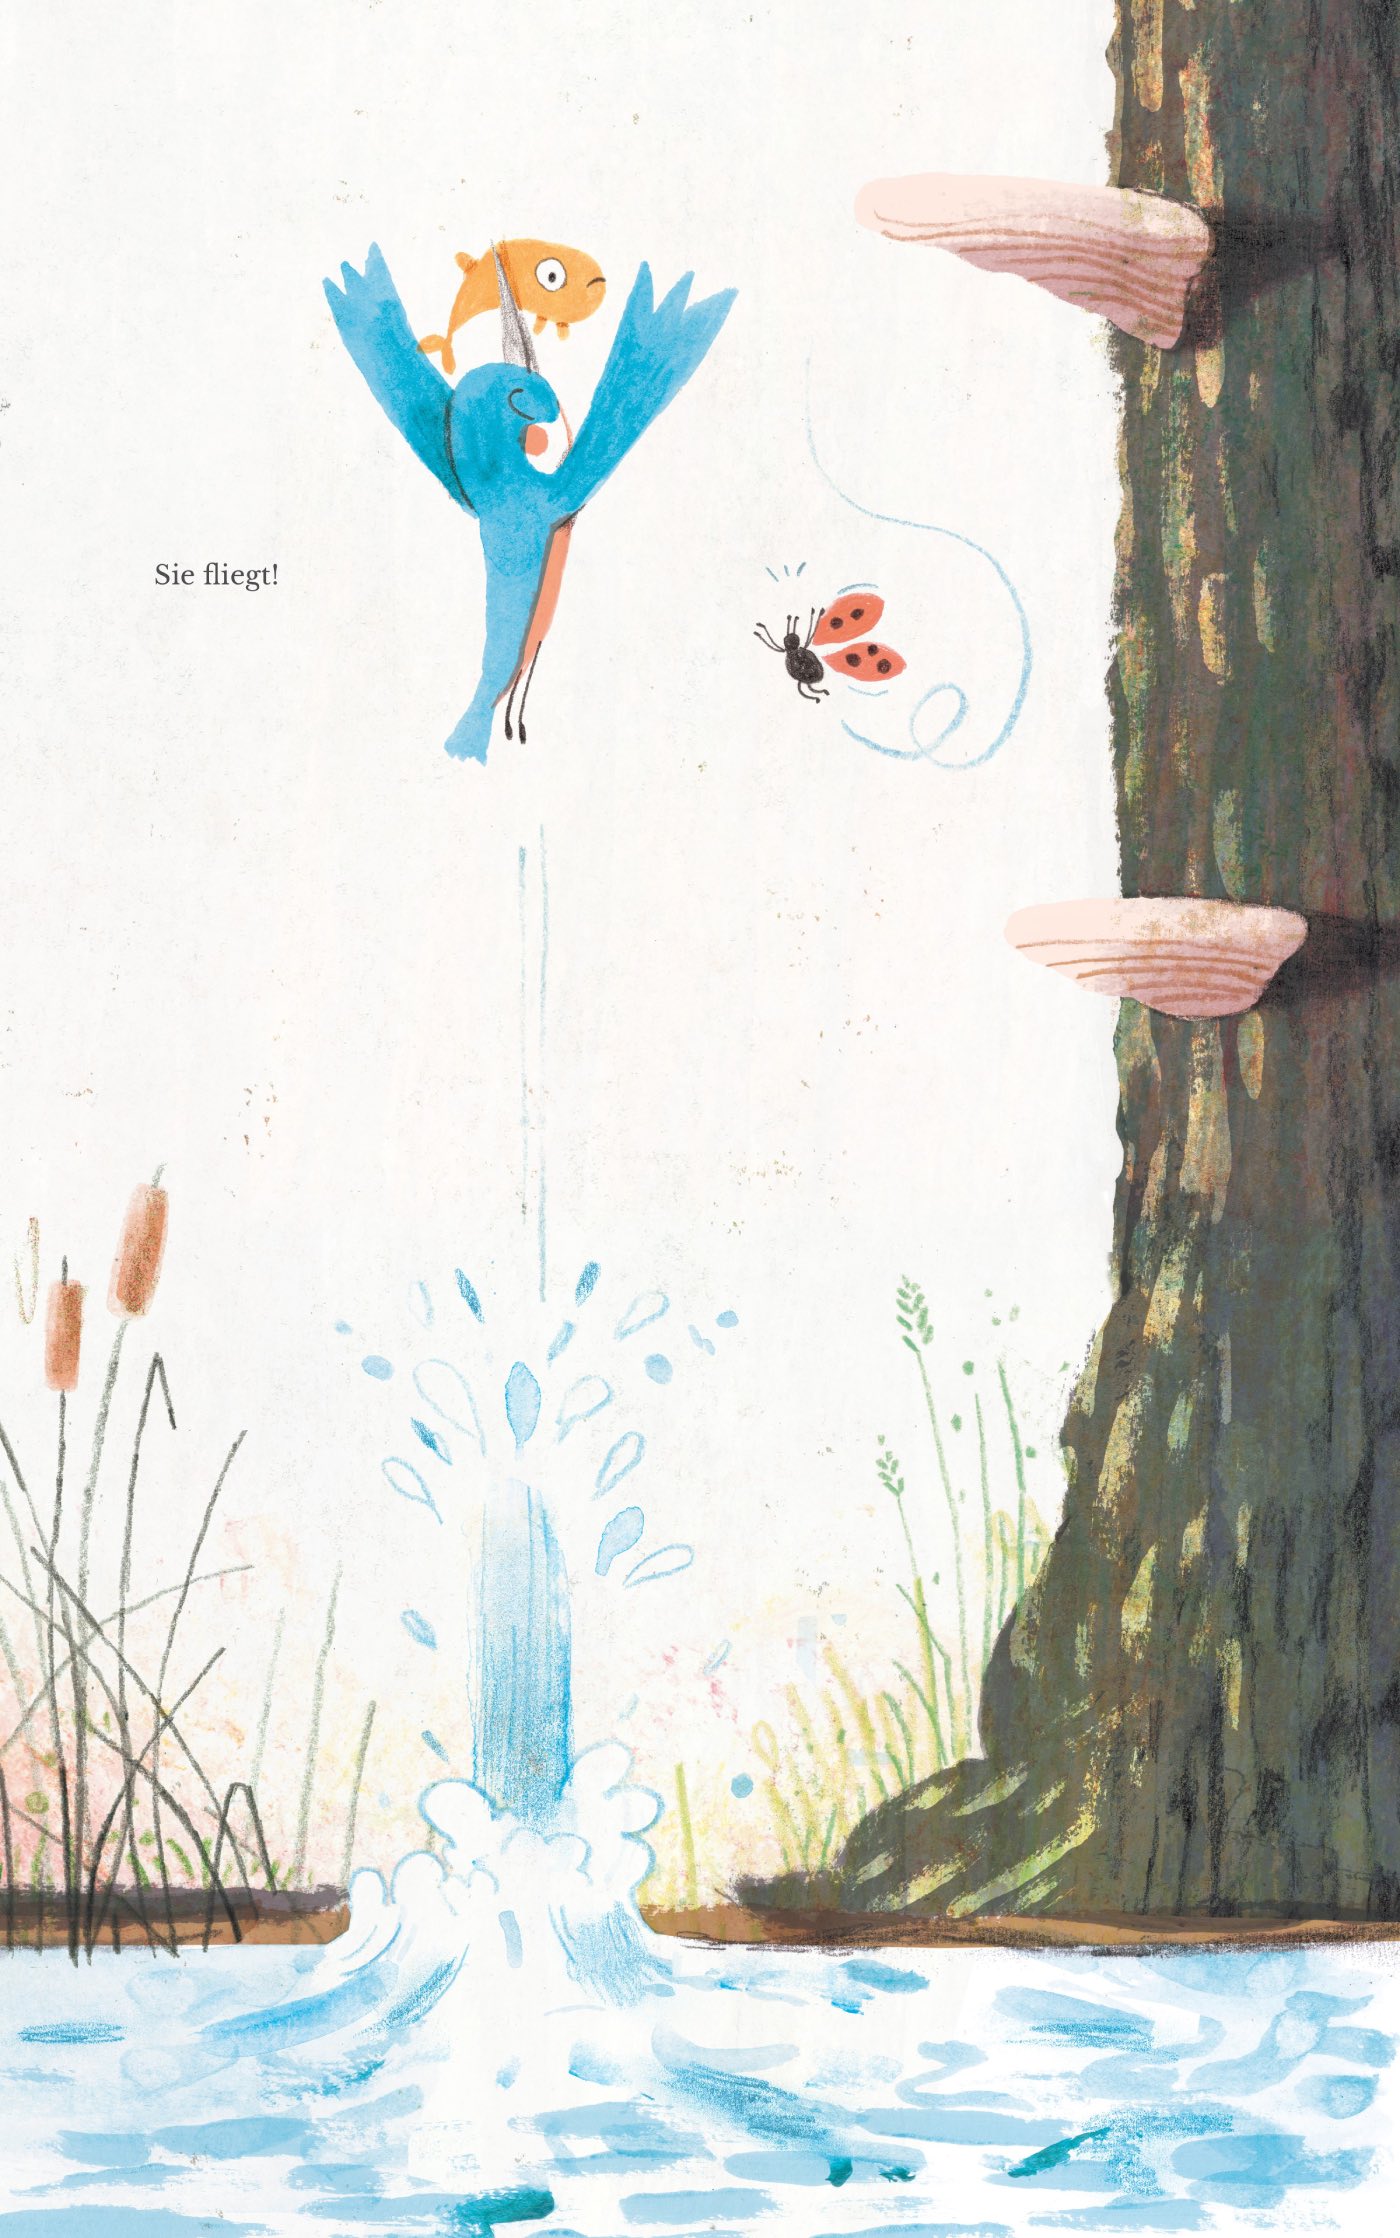 Buchtipps für Kinder: Pips fliegt – tolles Mutmachbuch für kleine Kinder // HIMBEER